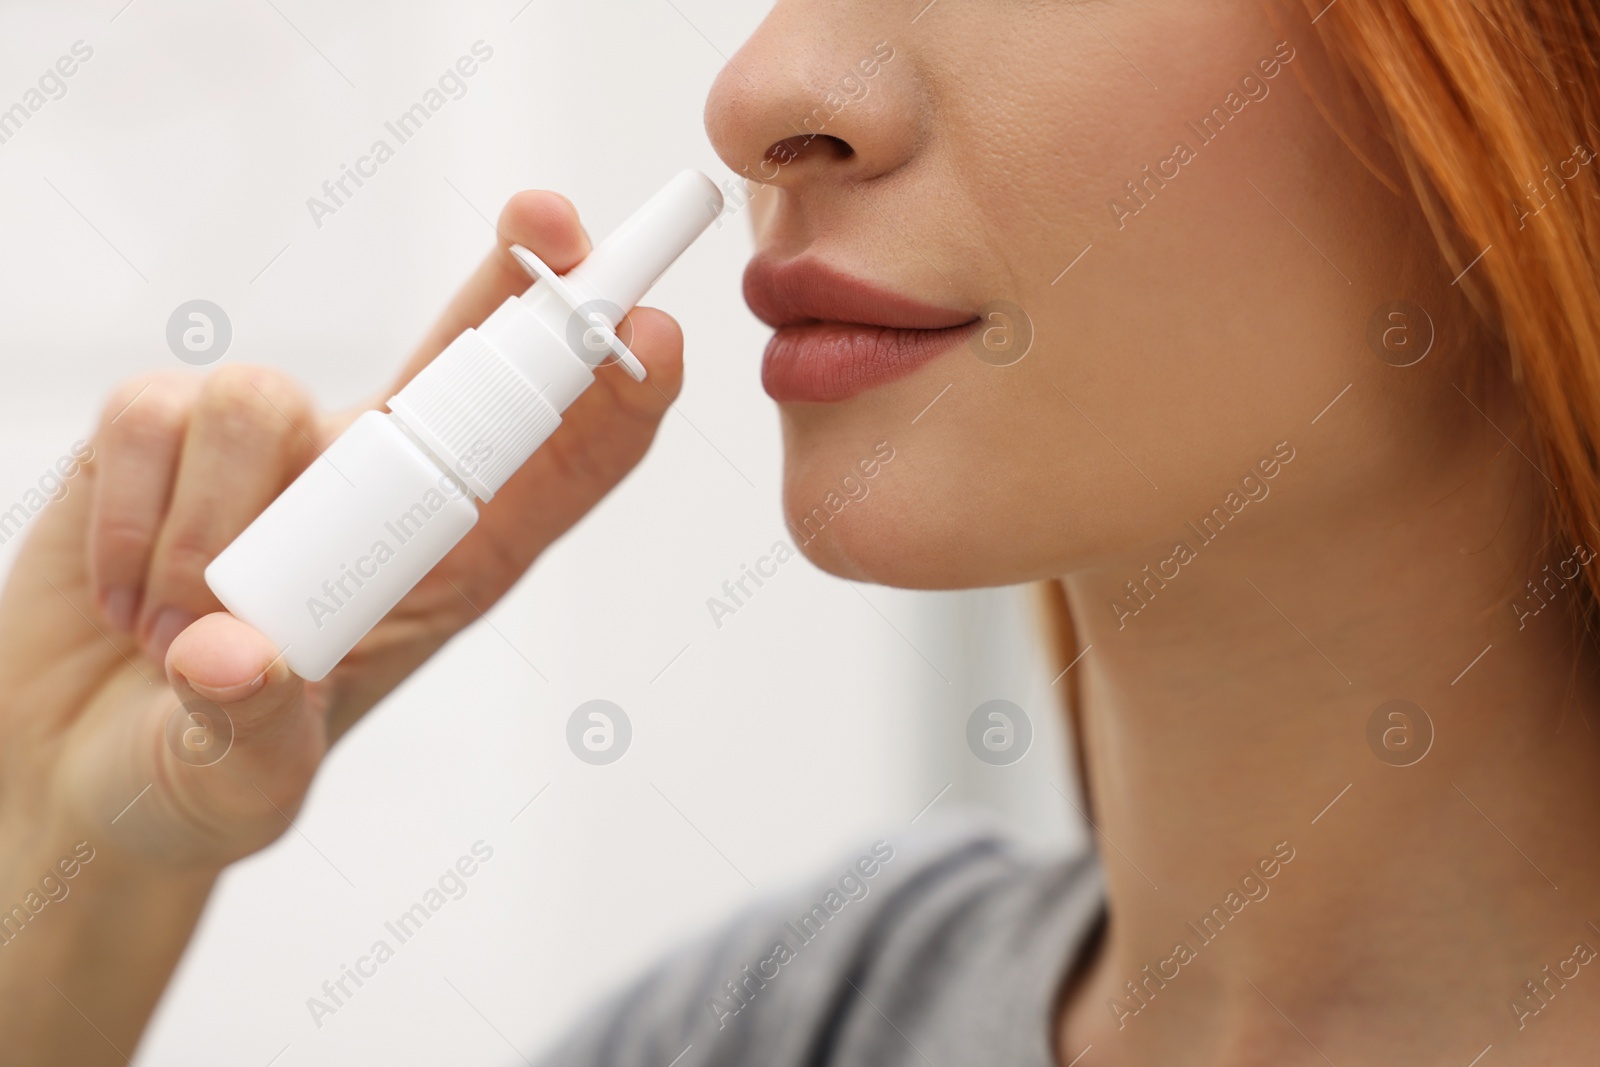 Photo of Medical drops. Woman using nasal spray at home, closeup